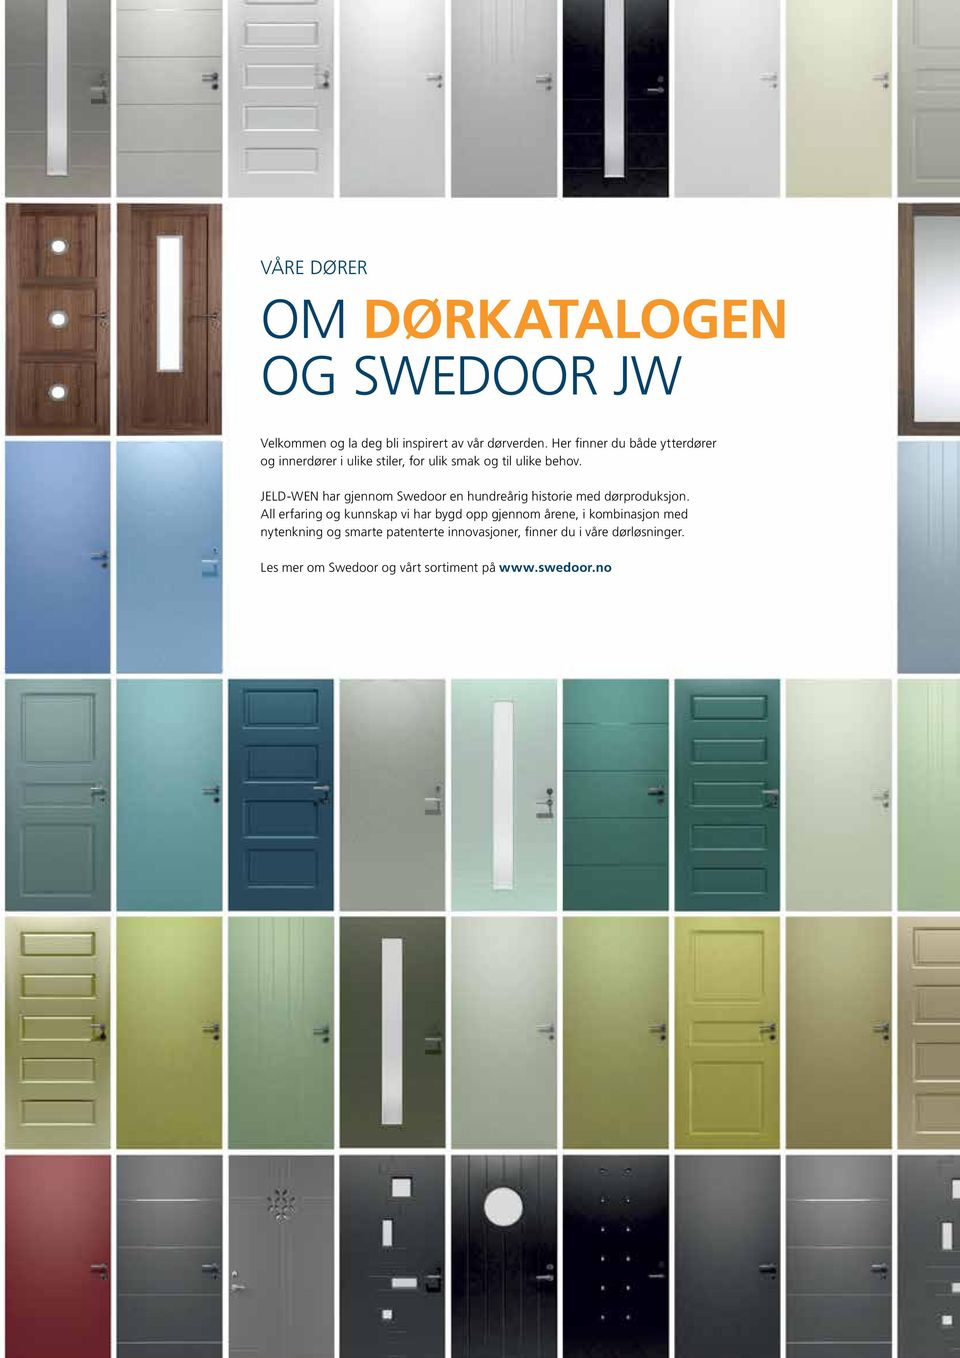 JELD-WEN har gjennom Swedoor en hundreårig historie med dørproduksjon.